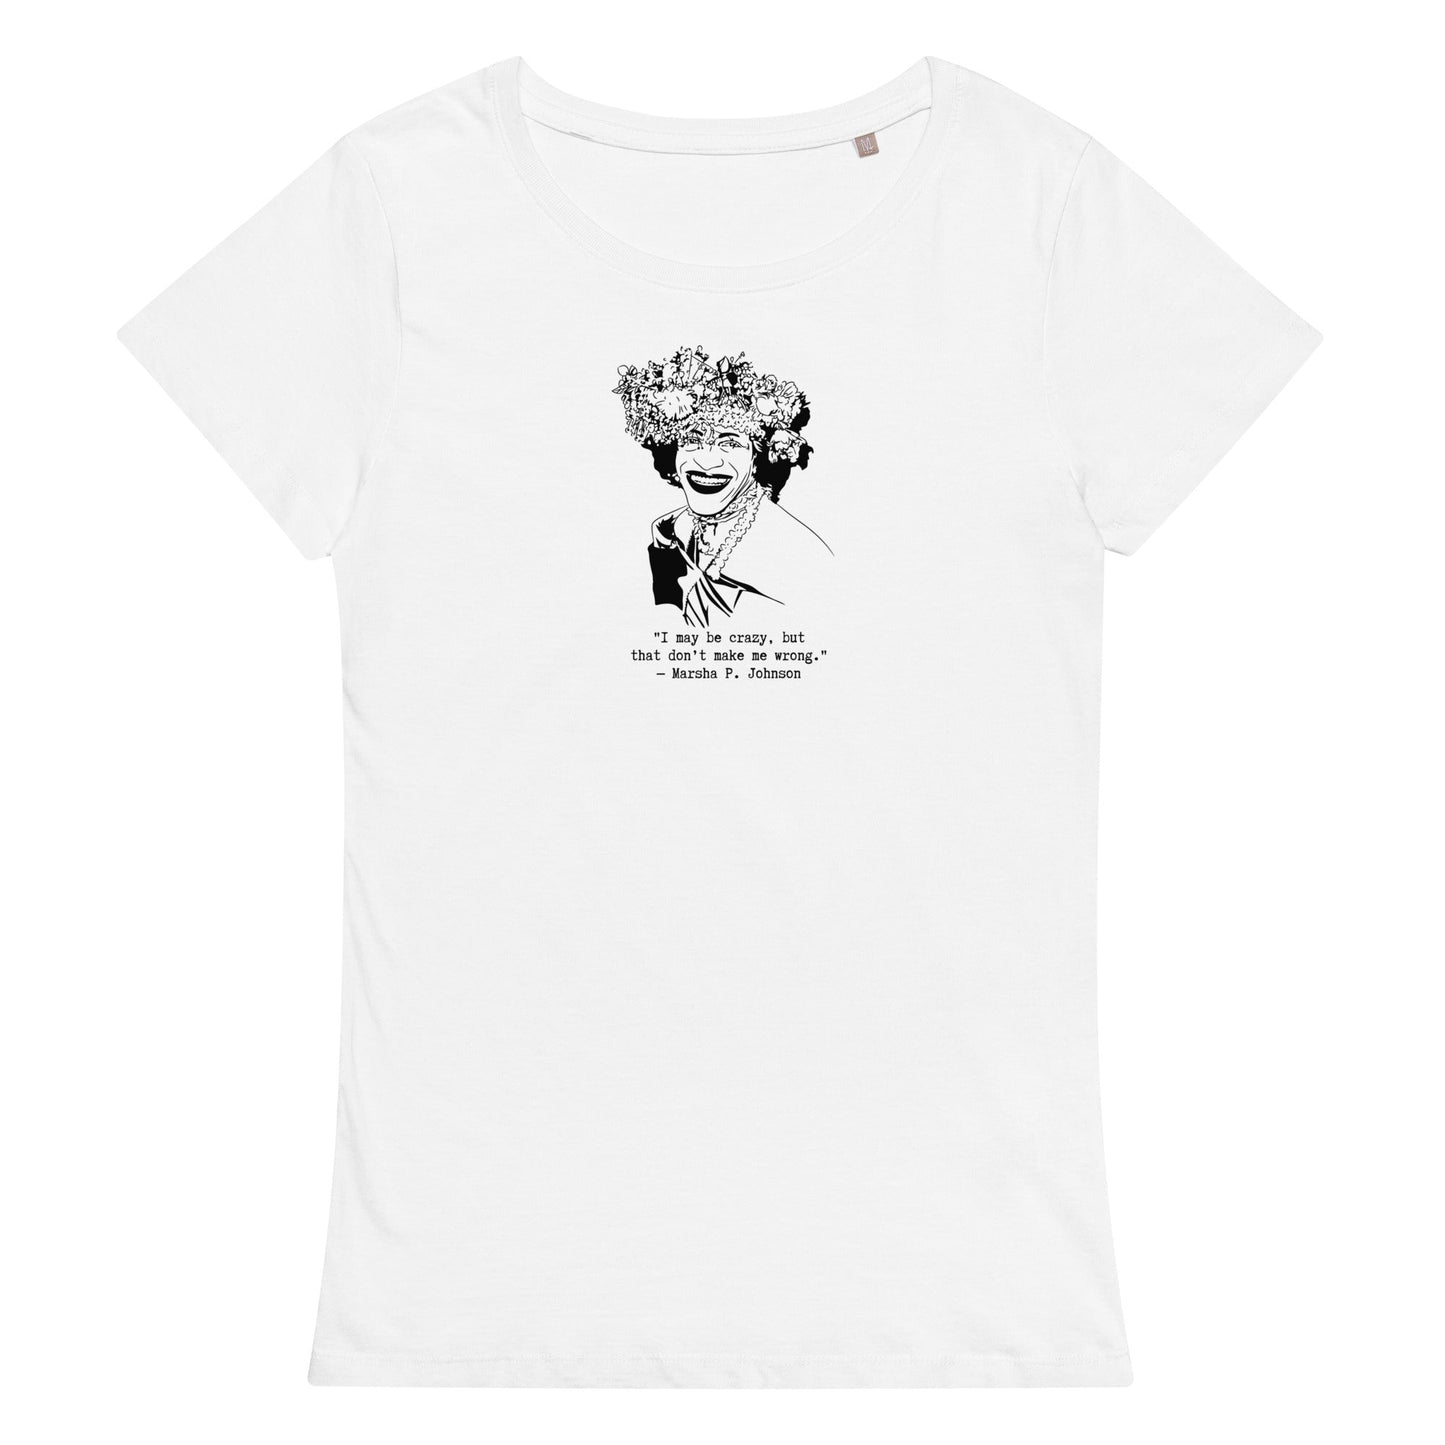 Marsha P. Johnson "I May Be Crazy But That Don't Make Me Wrong" organic t-shirt